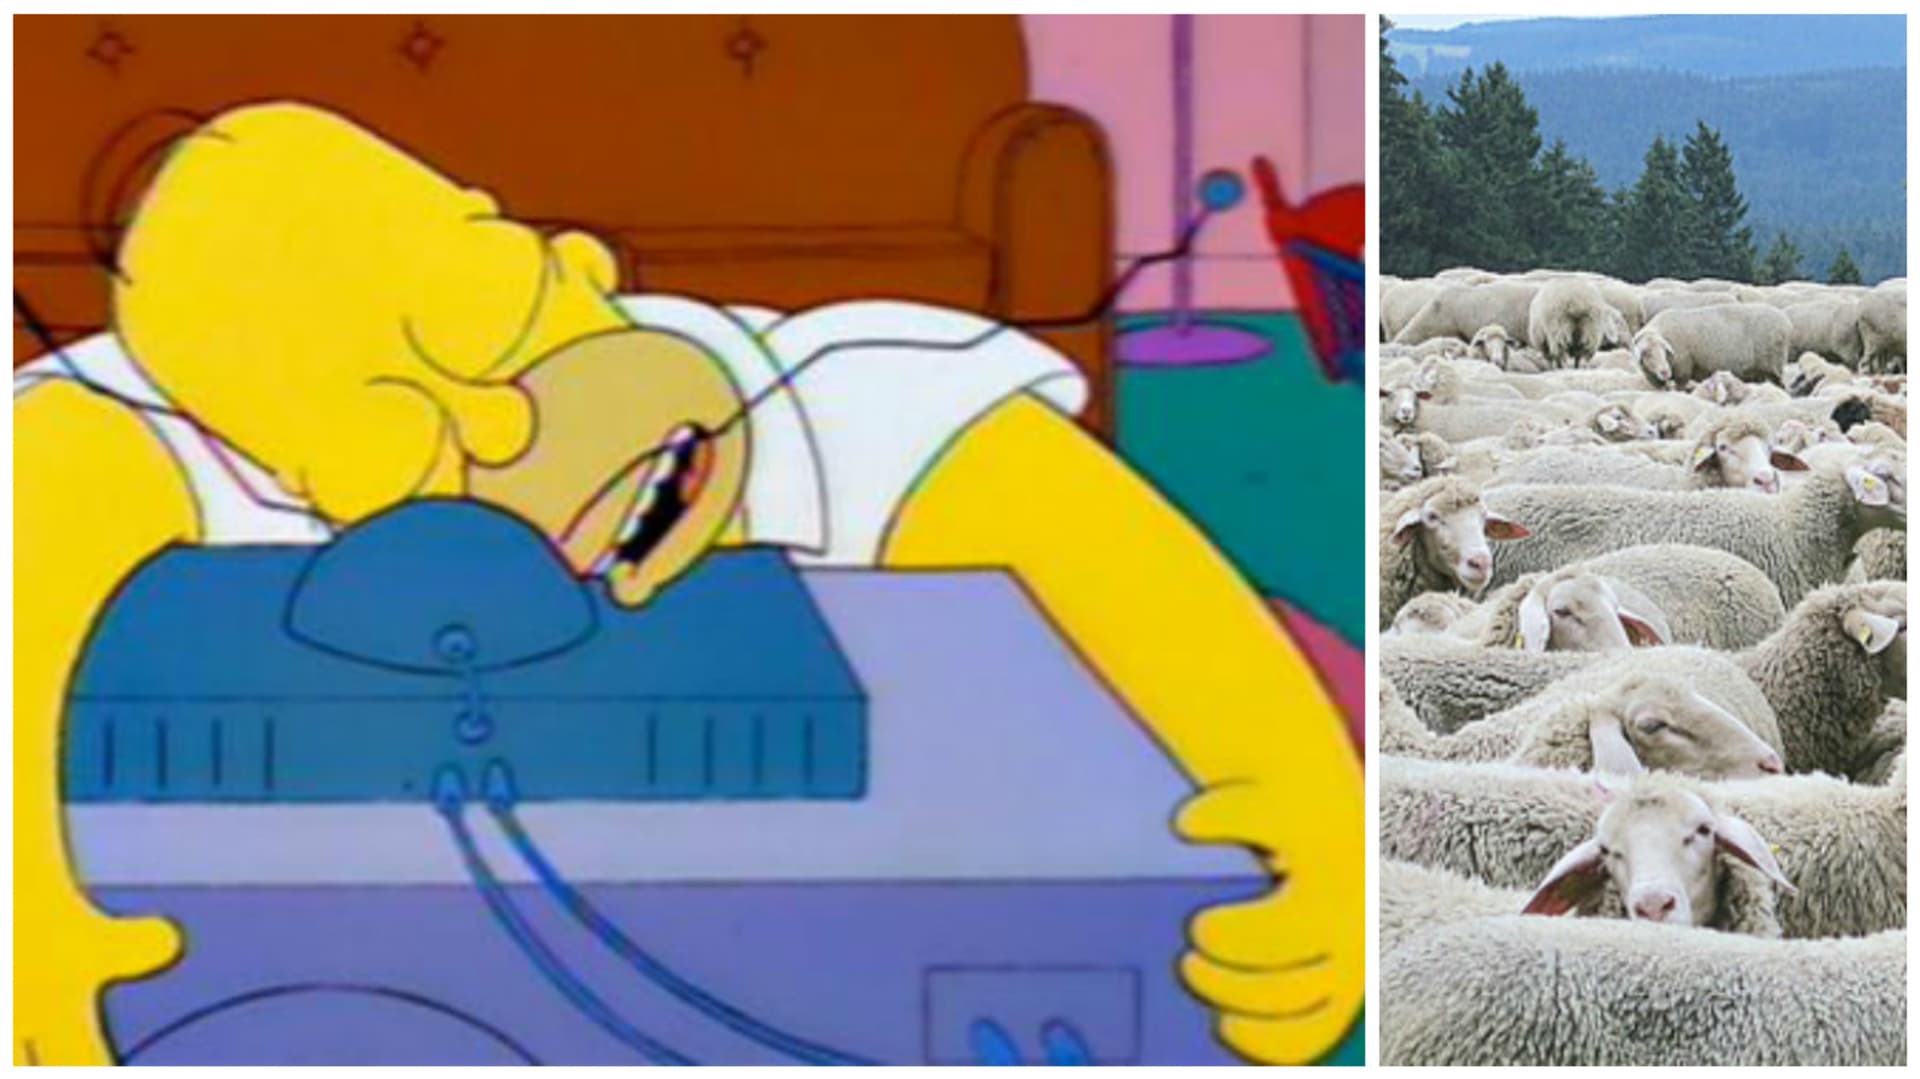 Homer potvrzuje - usínání u televize funguje!